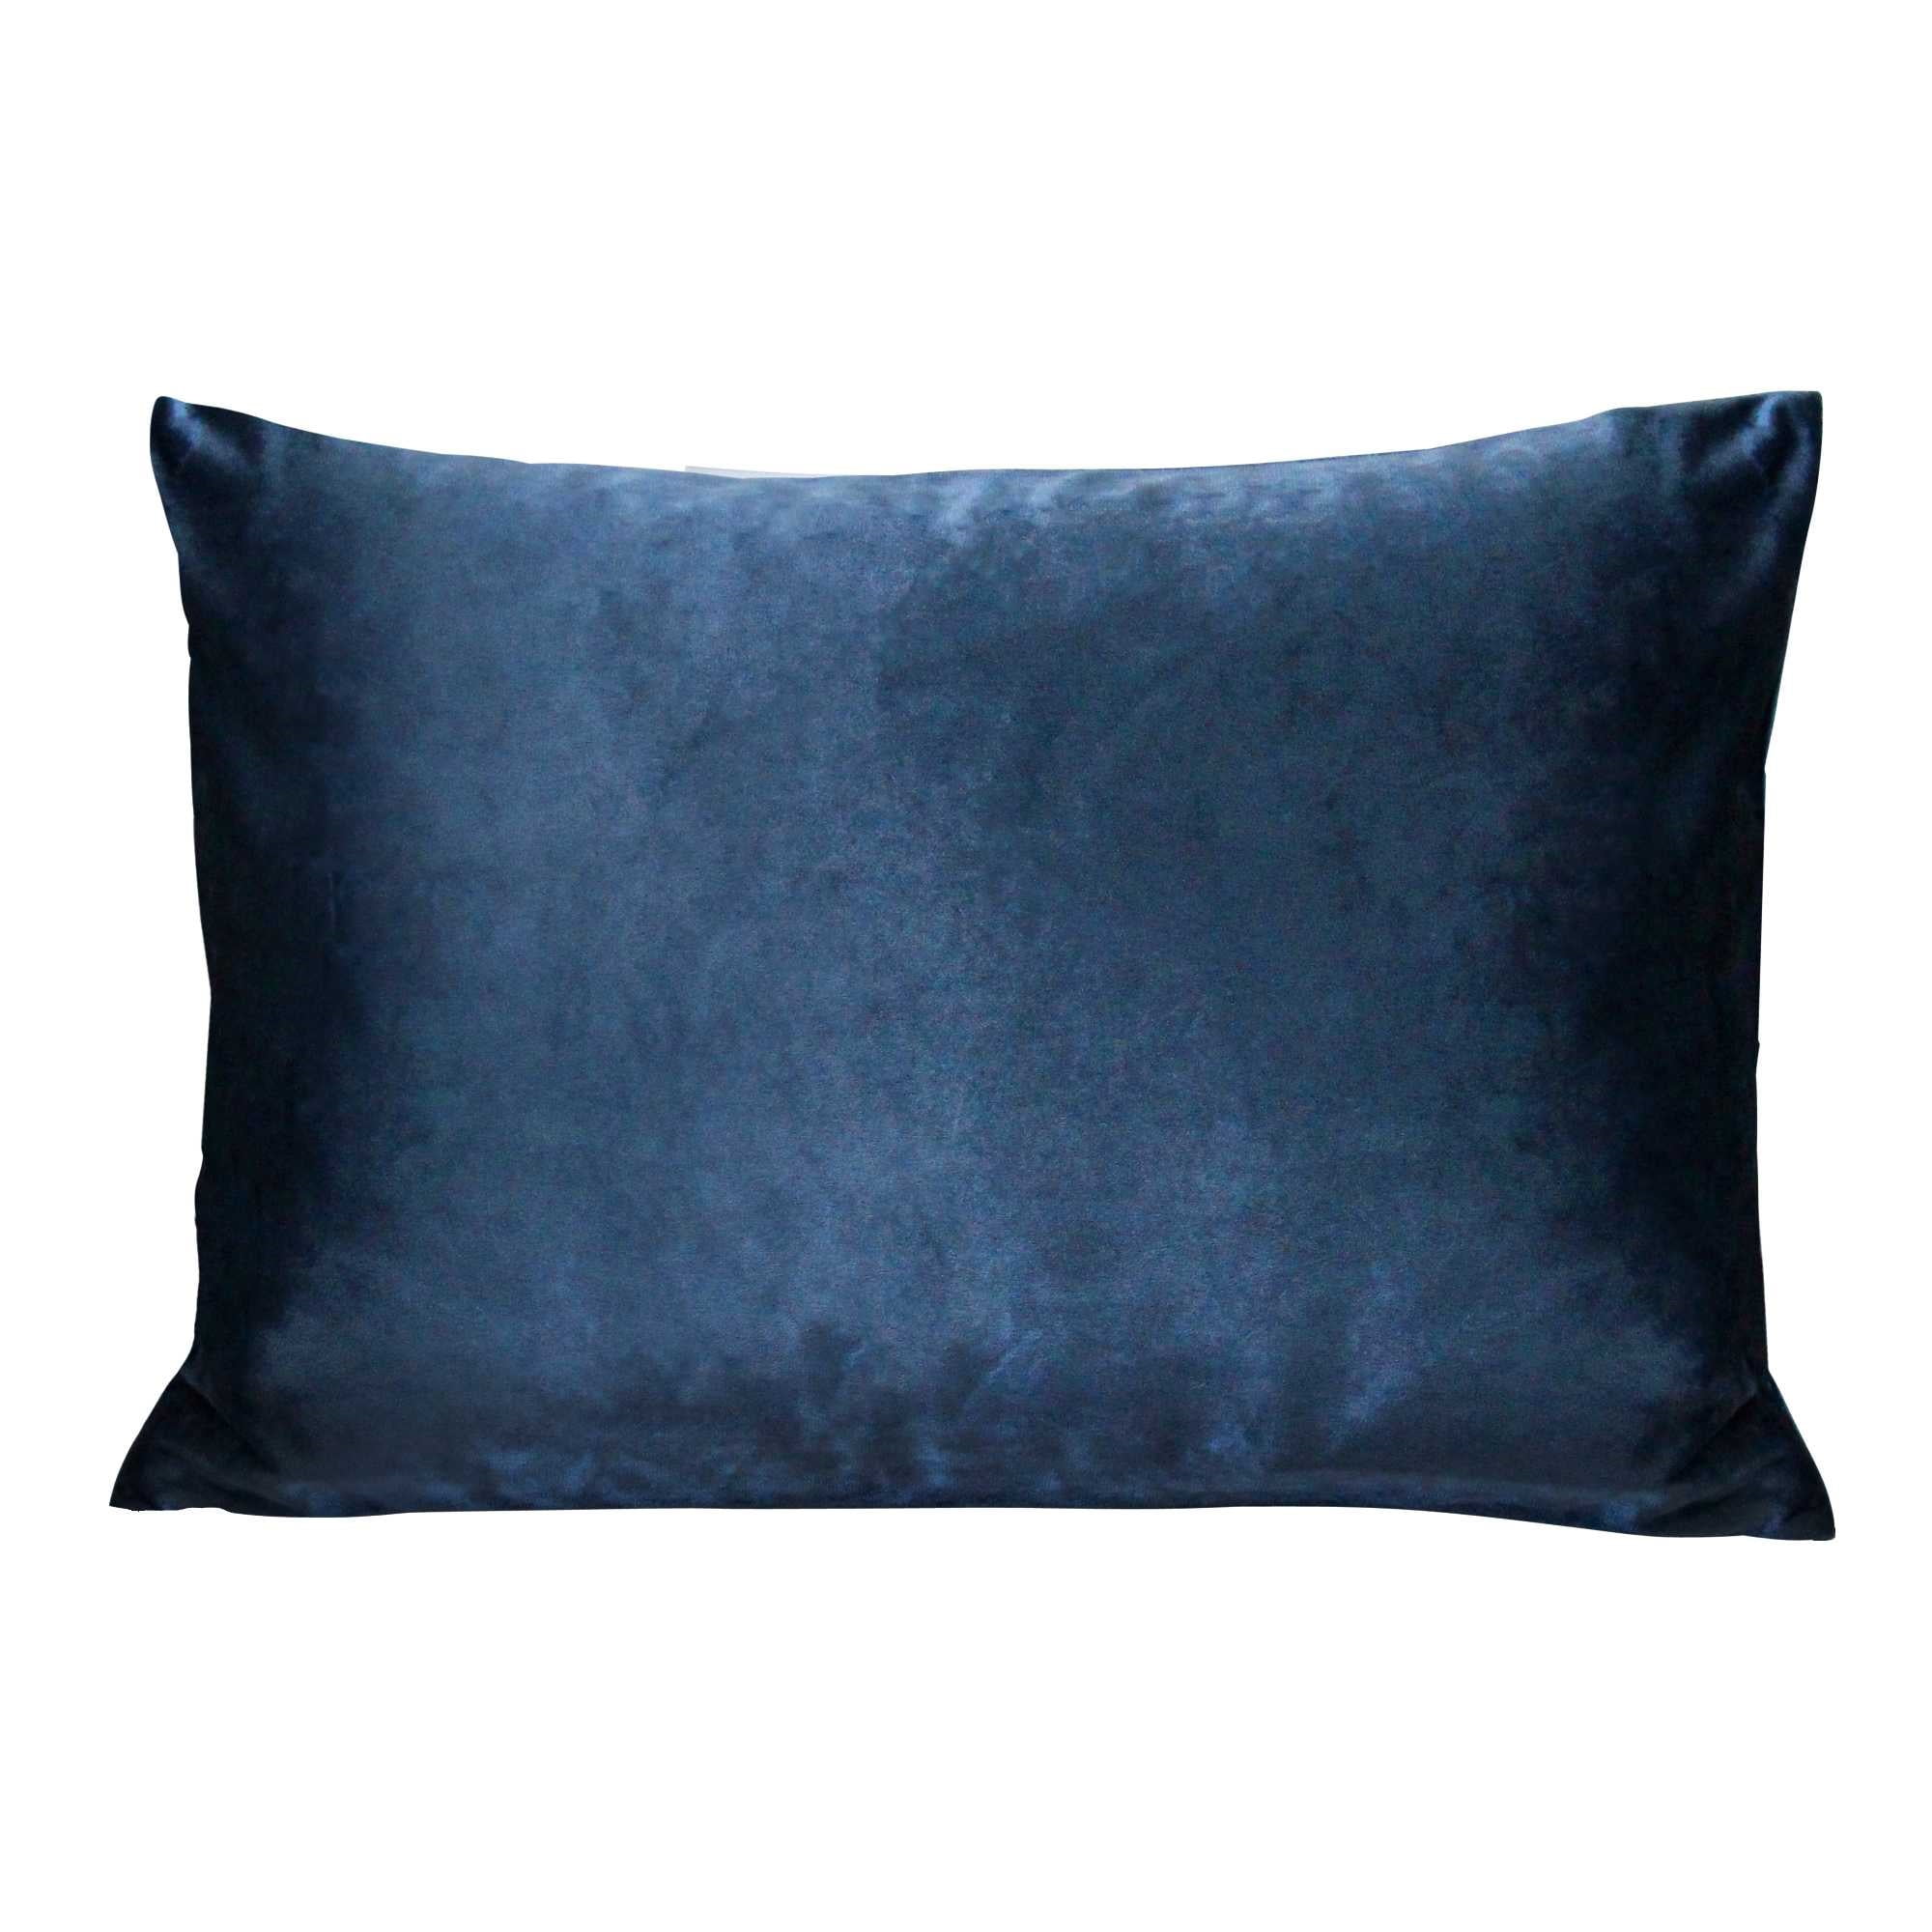 The Navy Blue Pintuck Extra Long Lumbar Throw Pillow